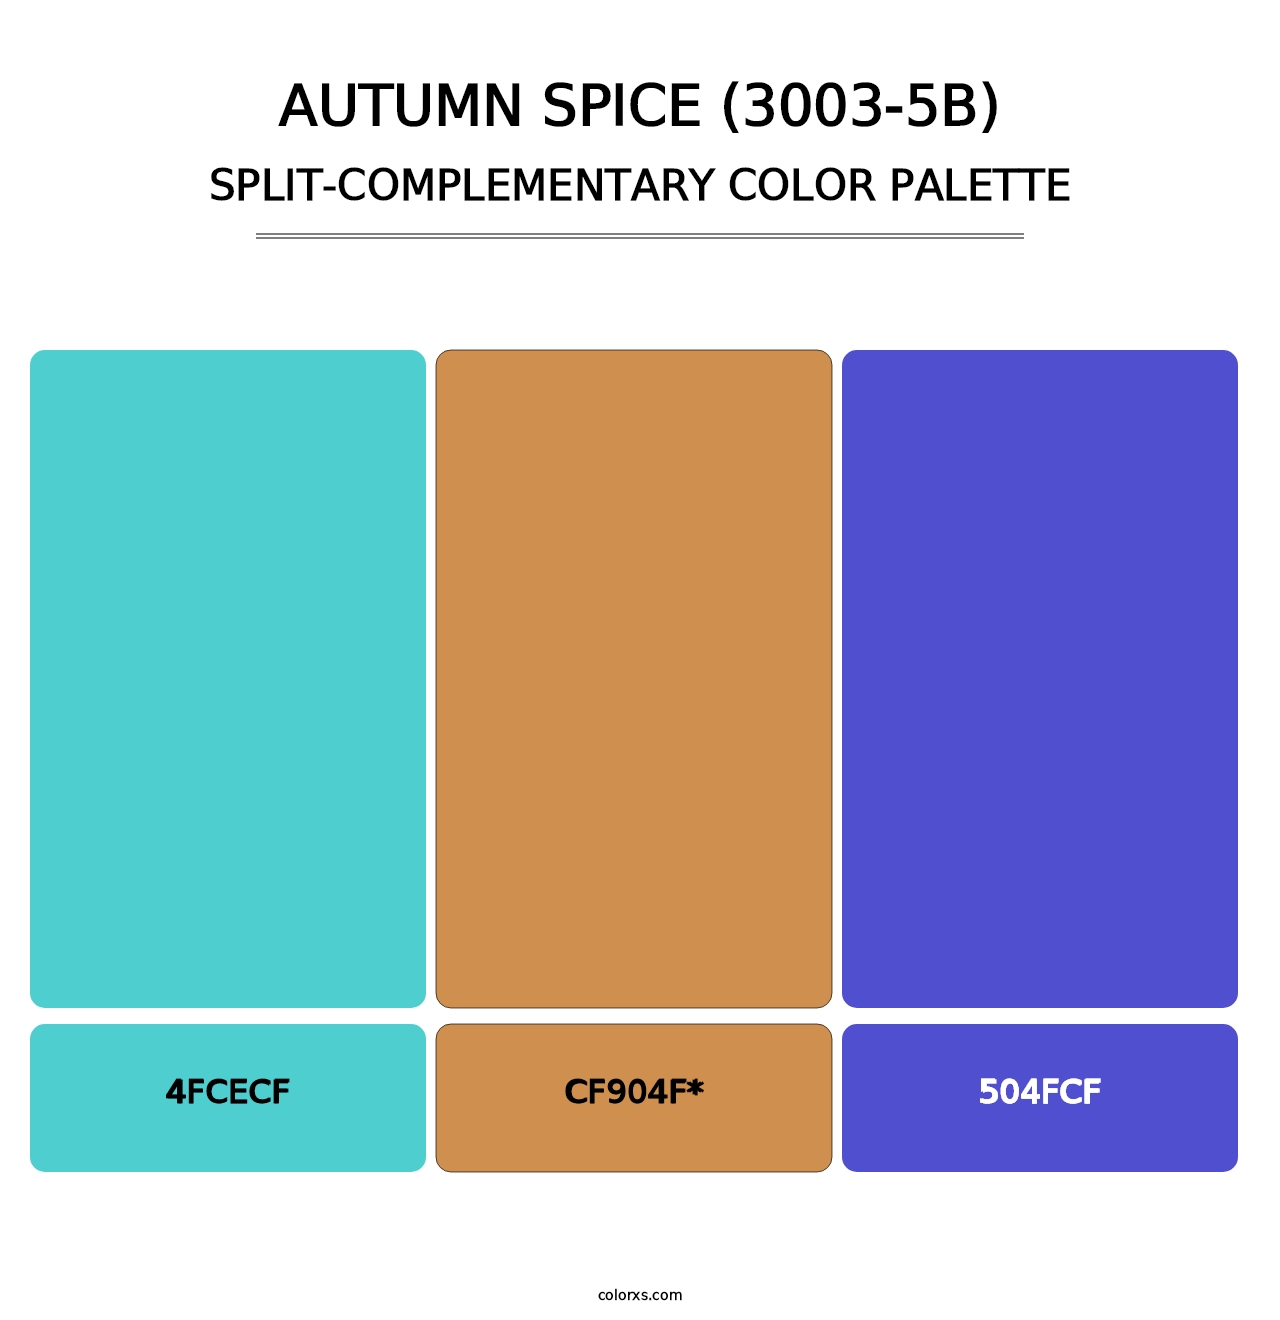 Autumn Spice (3003-5B) - Split-Complementary Color Palette